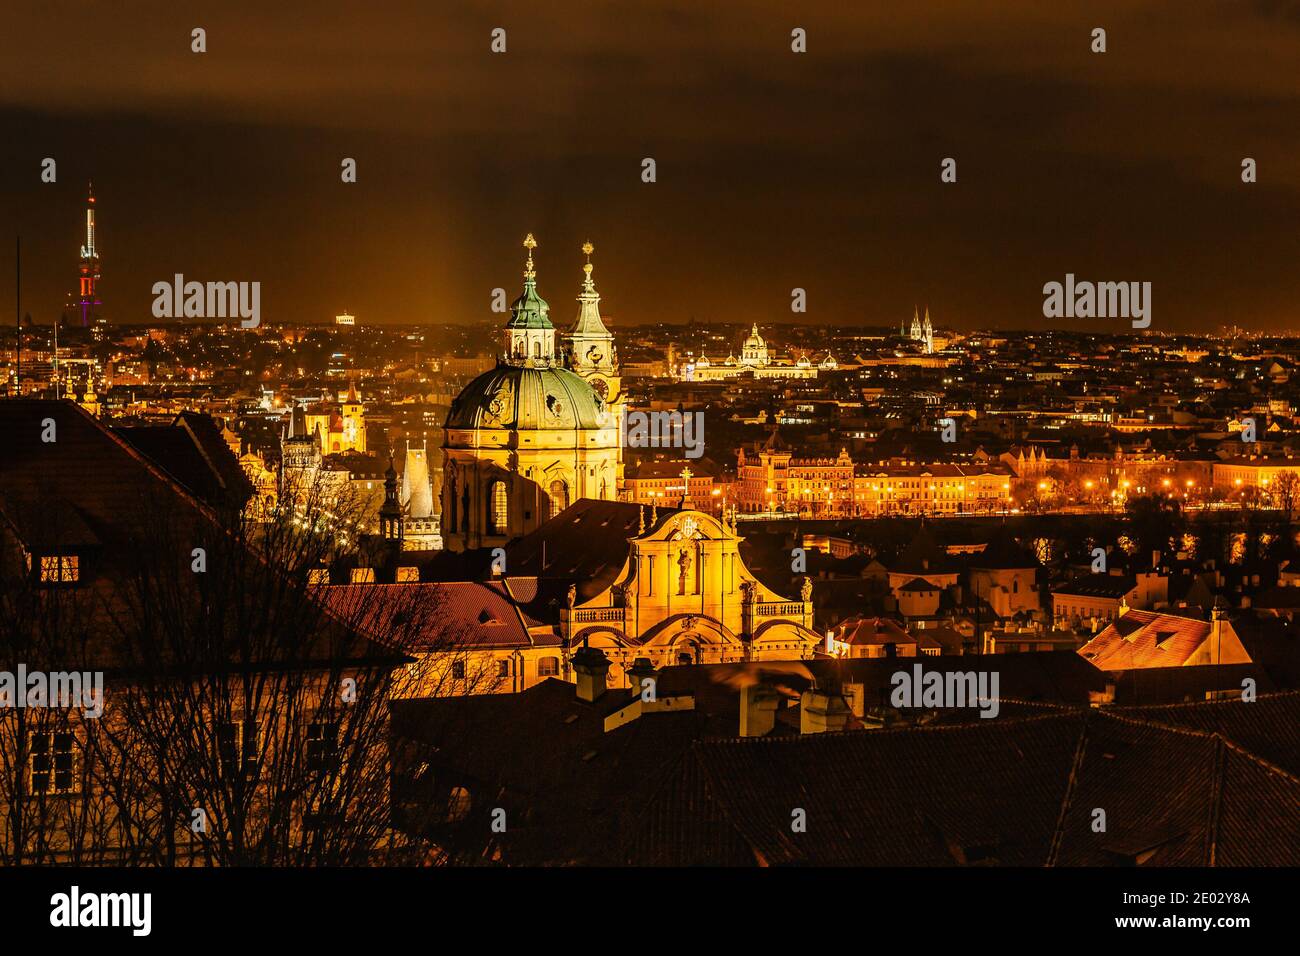 Nachtansicht der Altstadt mit historischen Gebäuden, Kirchen, Türmen in Prag, Tschechien republik.Prag Abendpanorama.erstaunliche europäische Stadtlandschaft.Nacht Cit Stockfoto